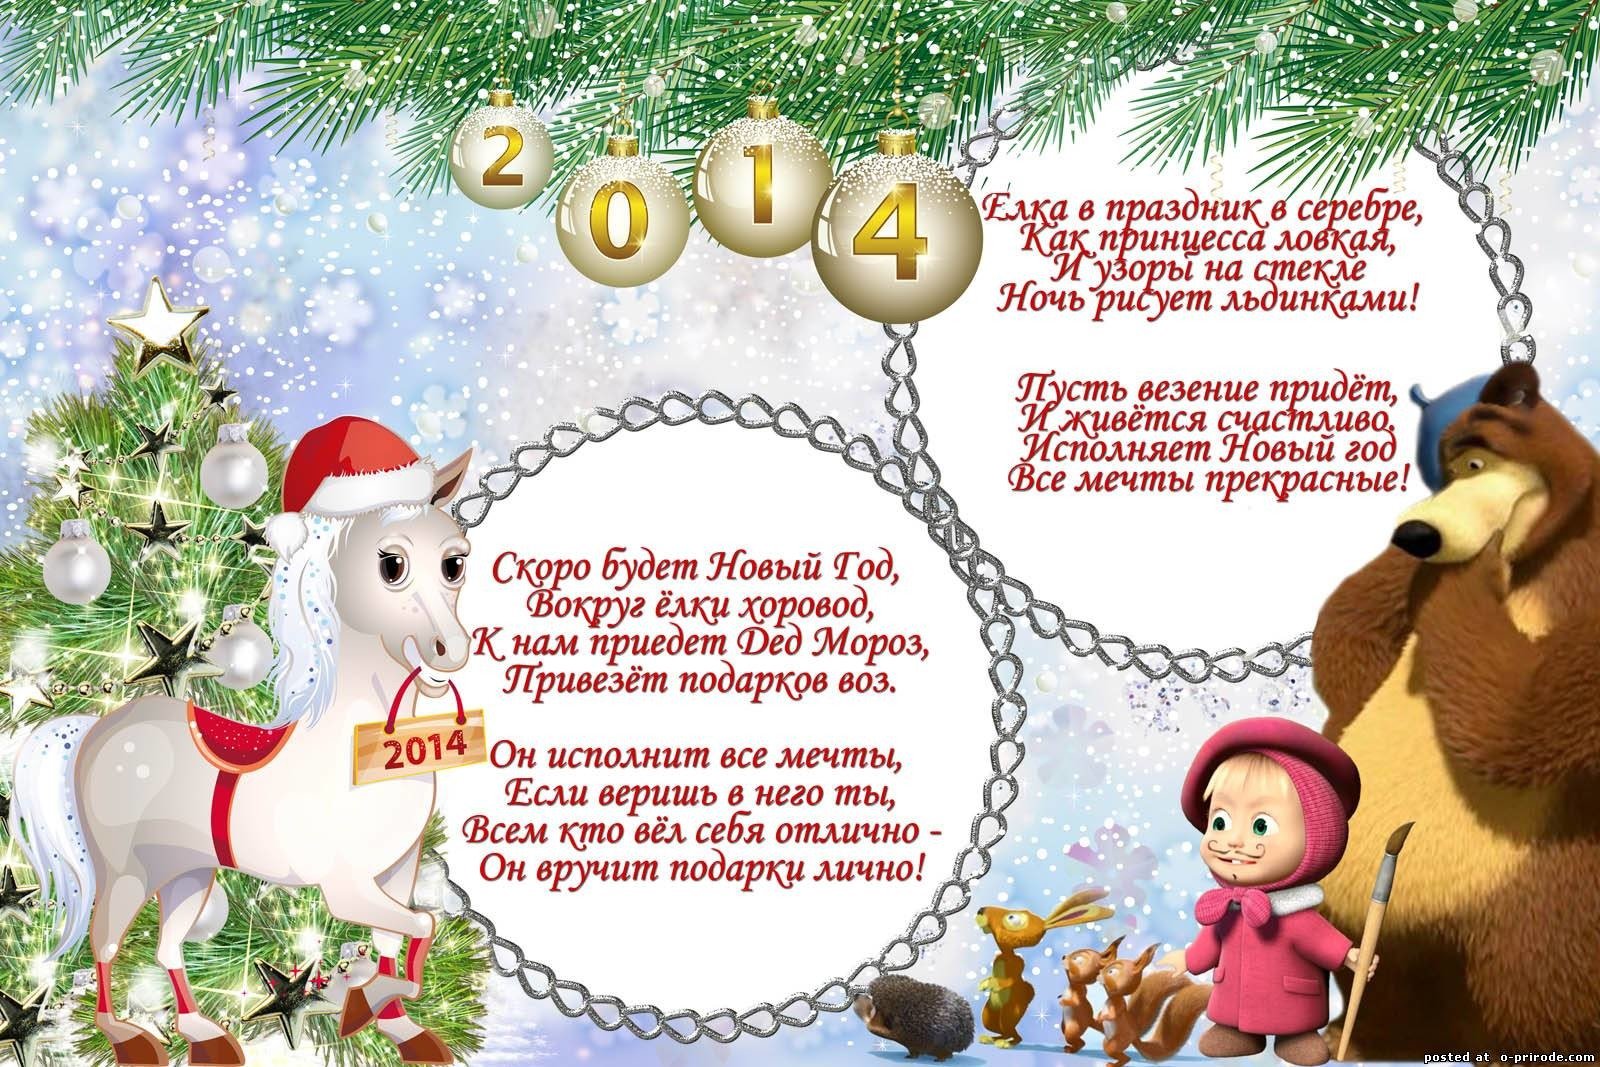 Этот год был поздравление. Новогоднее поздравление в стихах для детей. Стих поздравление на новый год для детей. Поздравление с новым годом для детей в стихах. Новогодние поздравления для детей в стихах короткие.